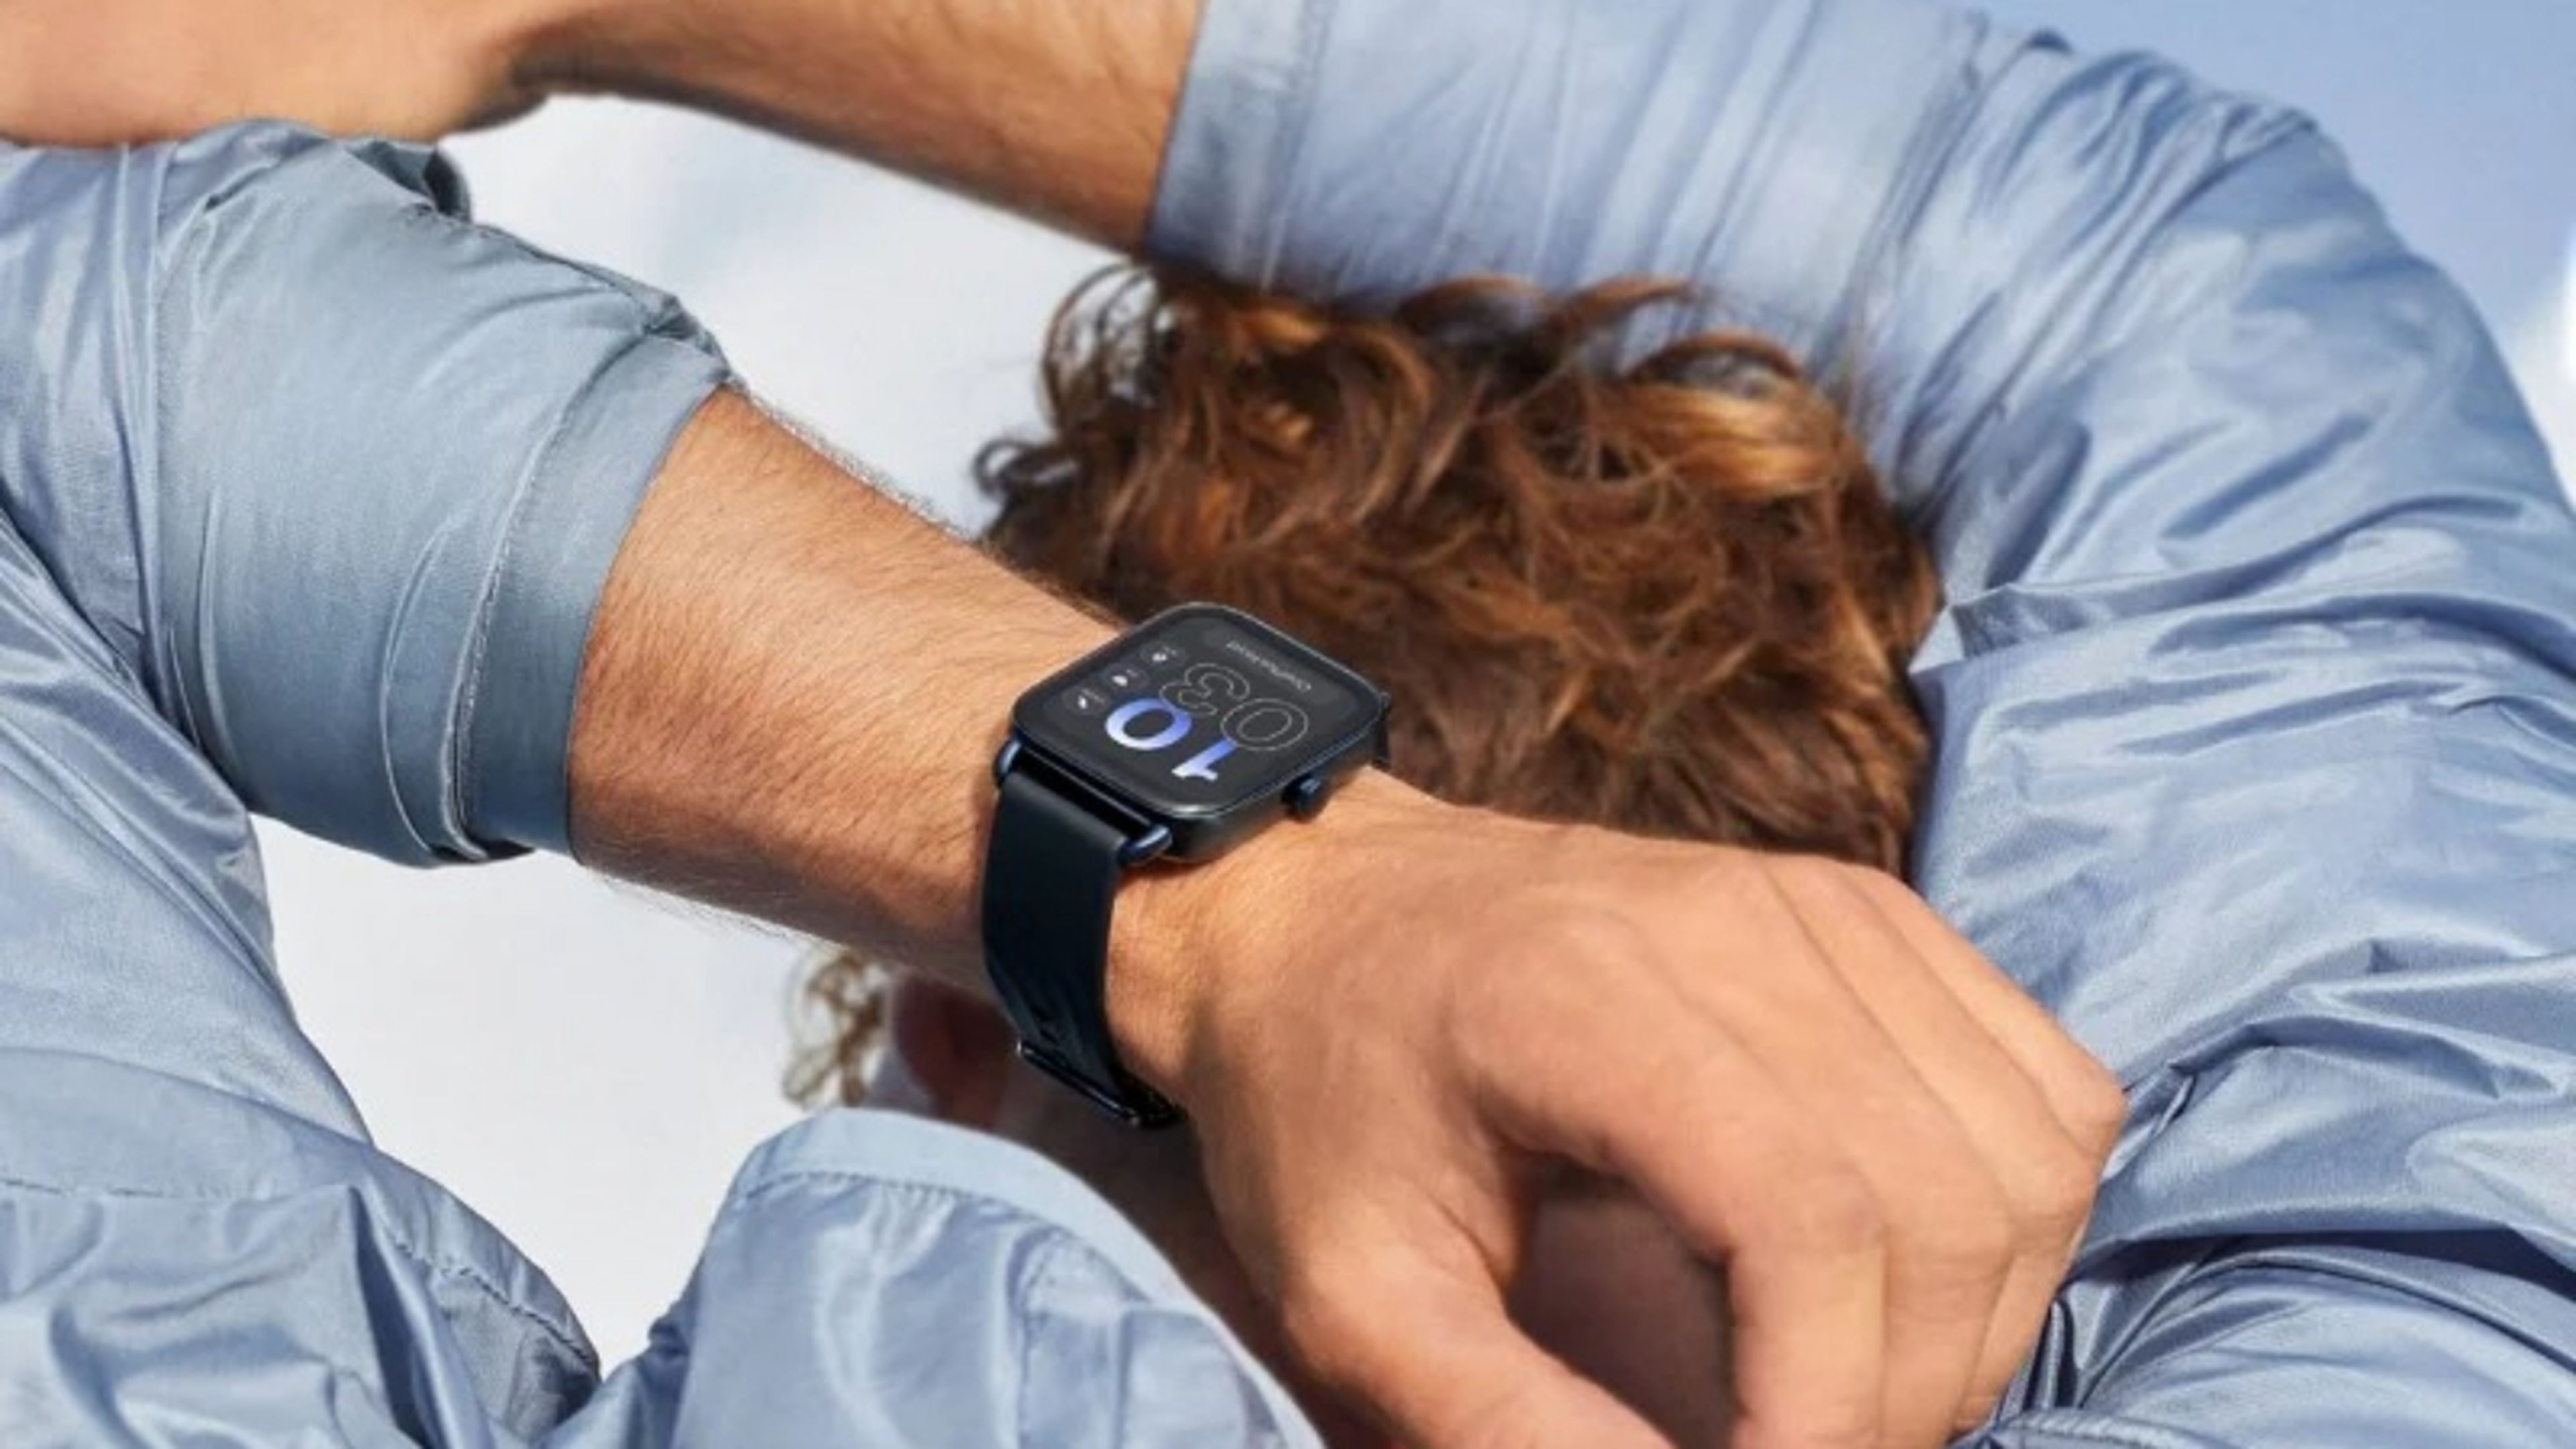 OnePlus Nord Watch es oficial: batería para 30 días y pantalla AMOLED para este nuevo smartwatch barato